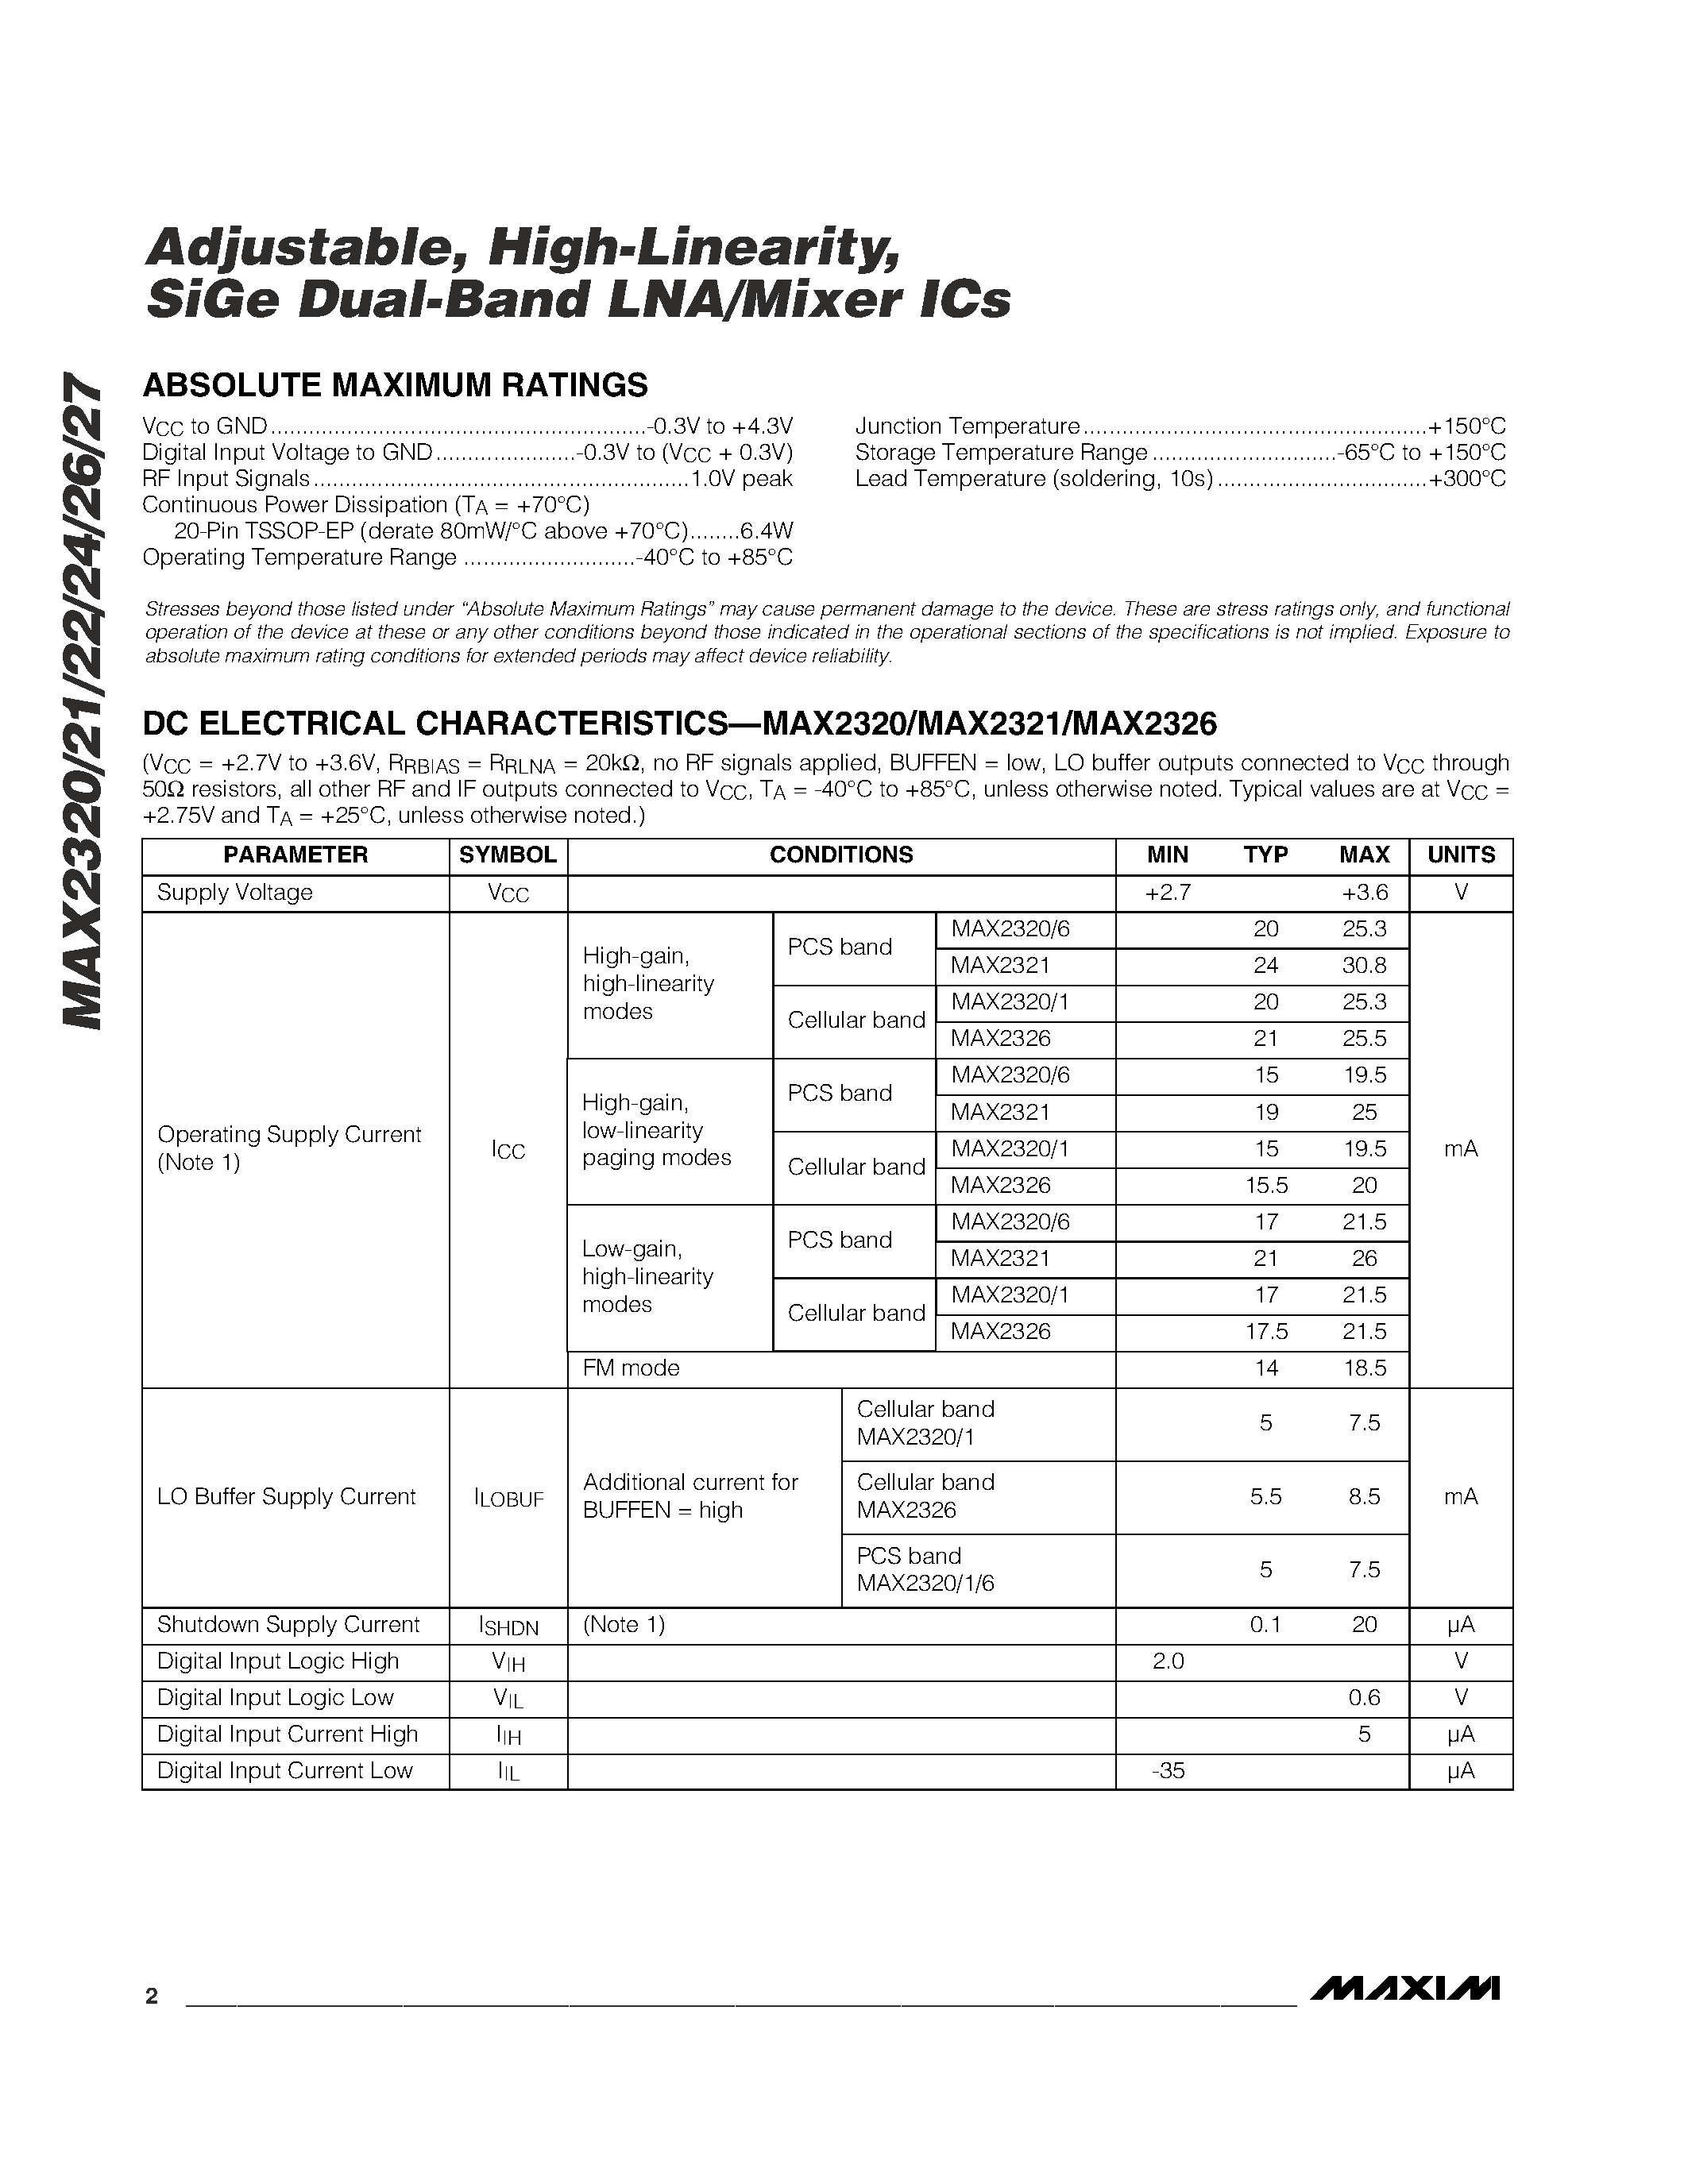 Даташит MAX2326EUP - Adjustable / High-Linearity / SiGe Dual-Band LNA/Mixer ICs страница 2